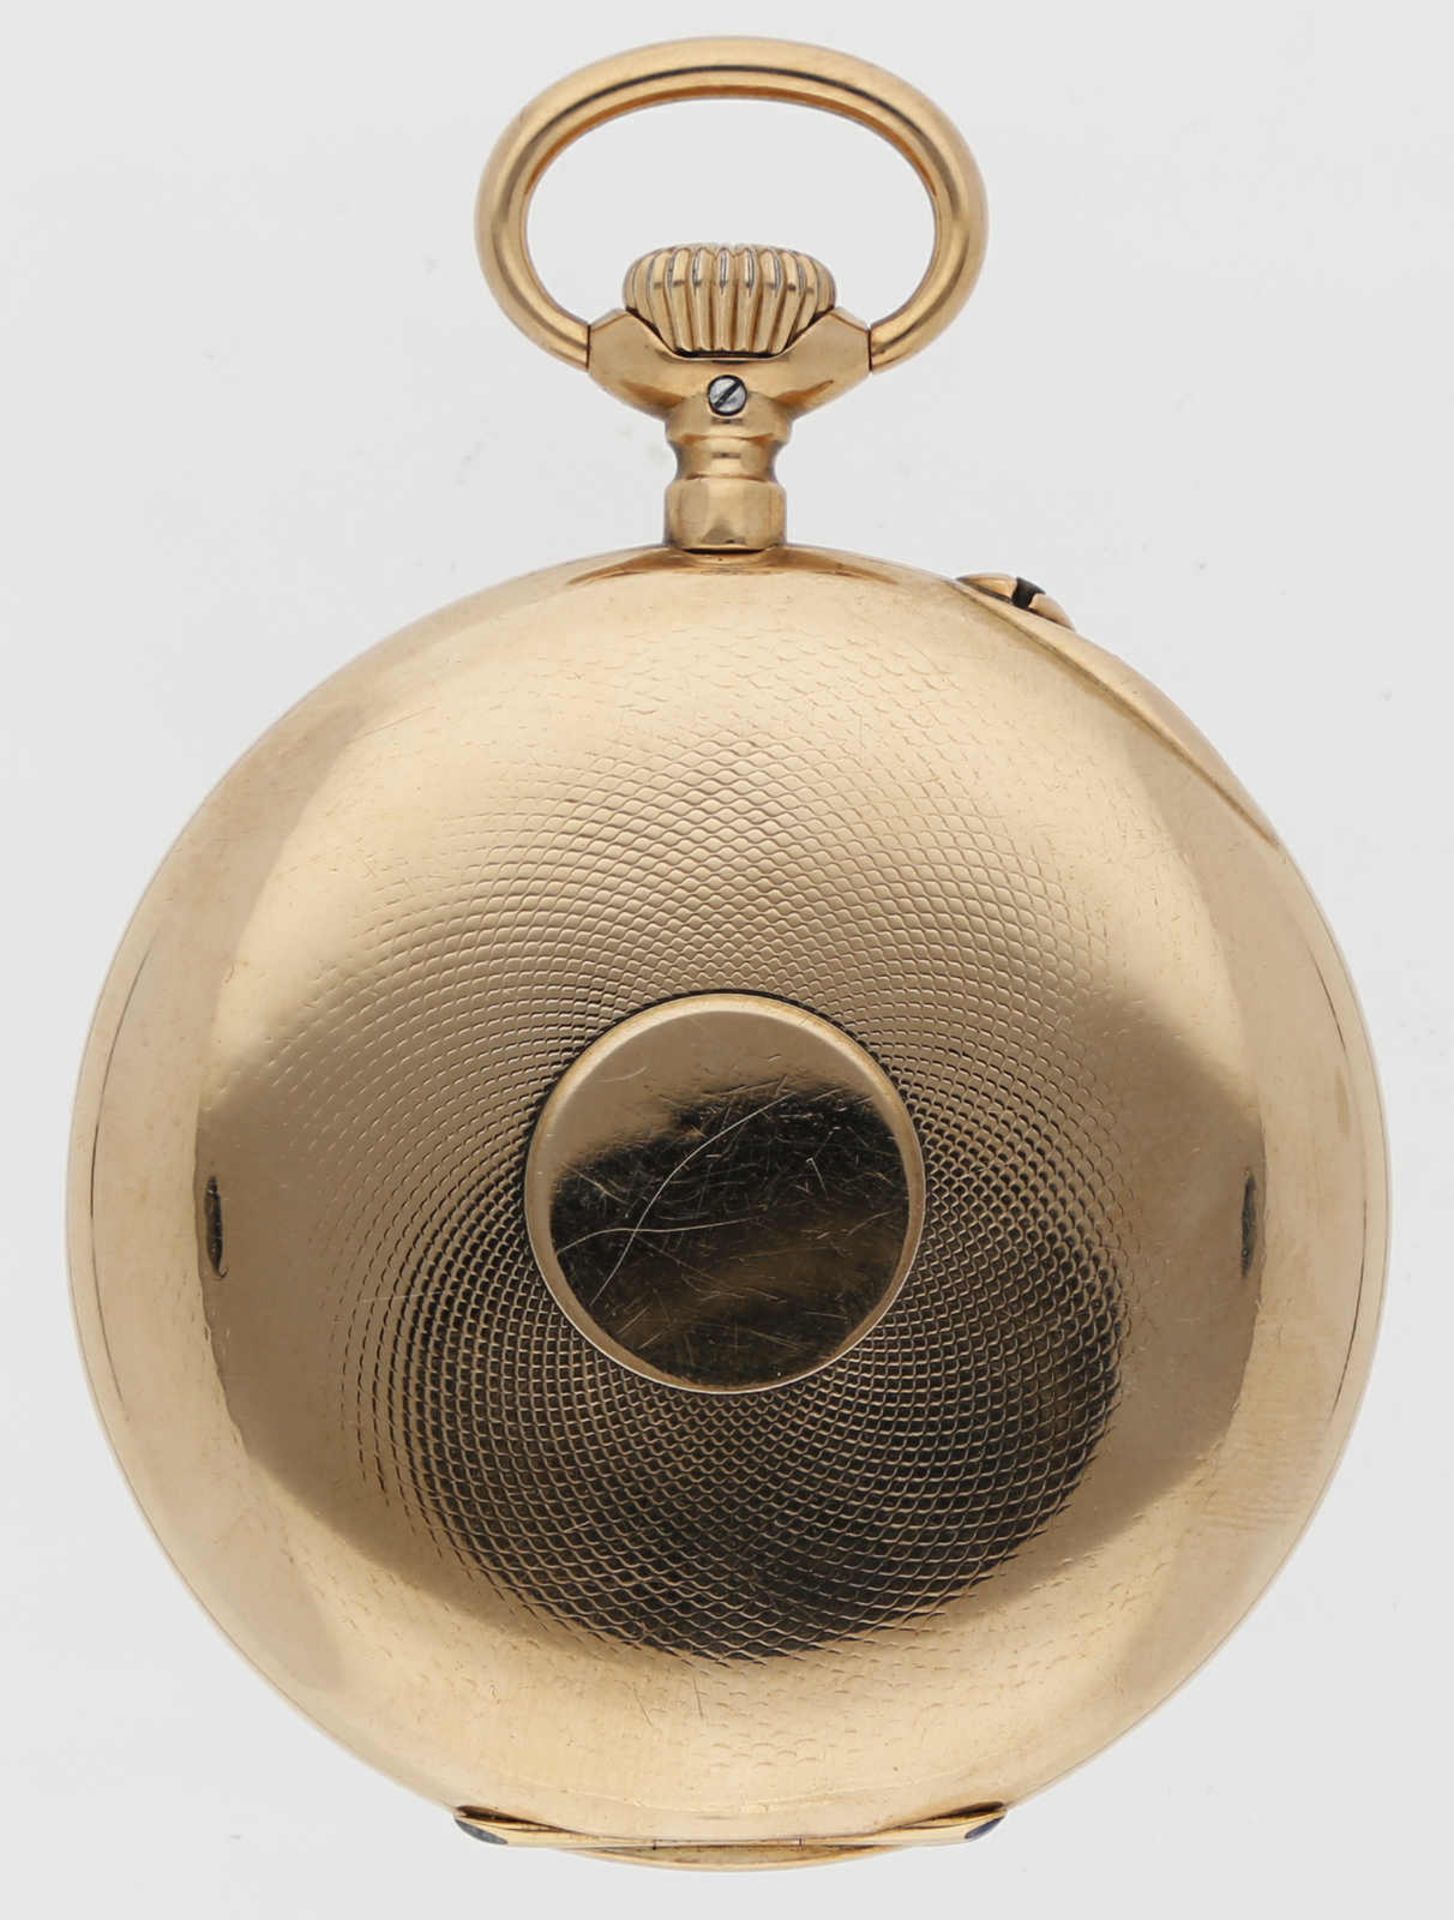 IWC Taschenuhr Lepine, Roségold 18K, Herstellungsjahr 1913, Durchmesser 50,8 mm, Gehäuse Weisses - Bild 2 aus 3